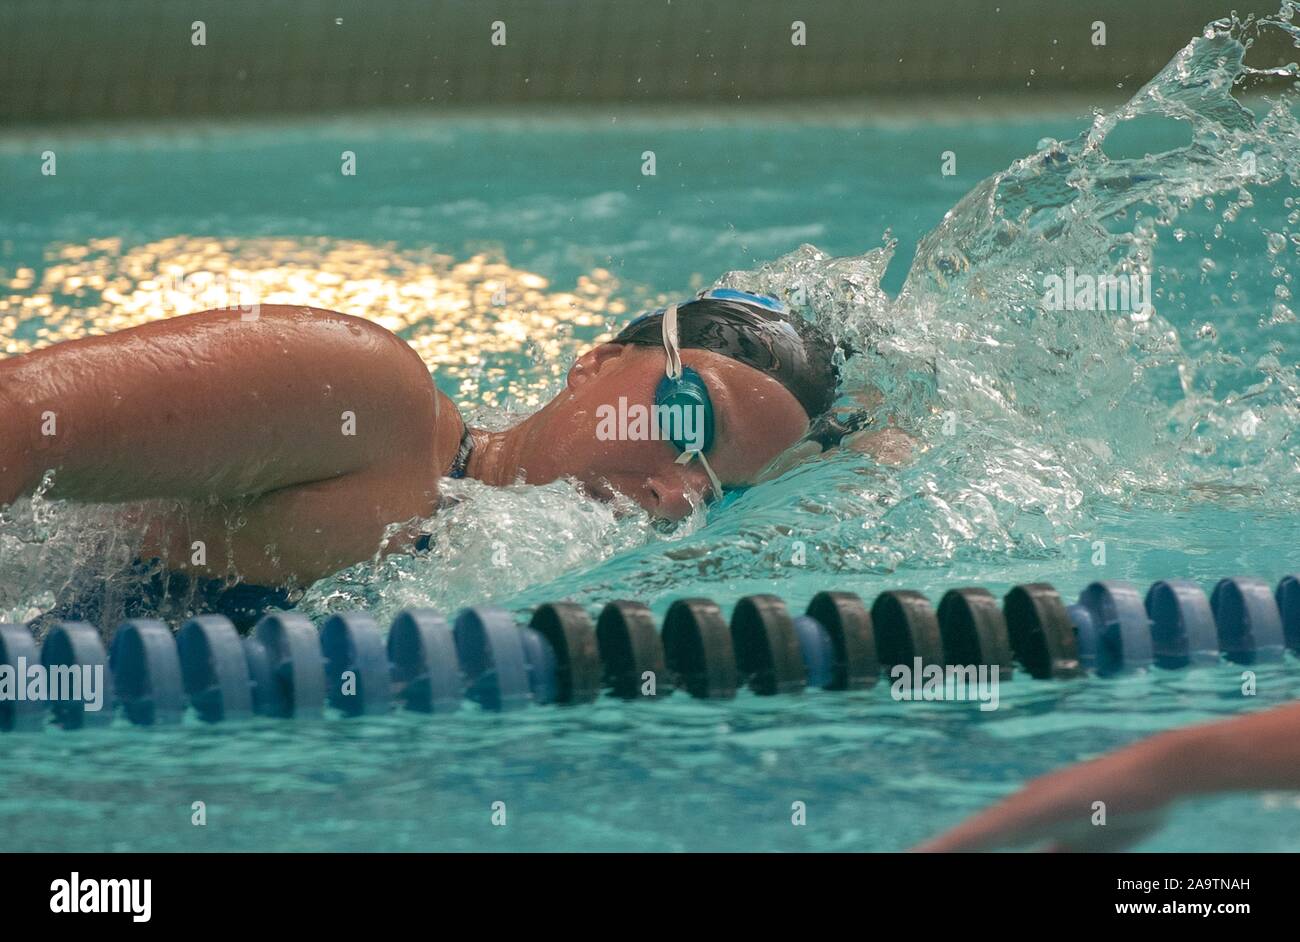 Profil obscurci shot, de la poitrine, de l'Université Johns Hopkins, membre de l'équipe de natation masculine, se déplaçant dans l'eau tout en effectuant une sidestroke, 14 janvier 2005. À partir de la collection photographique de Homewood. () Banque D'Images